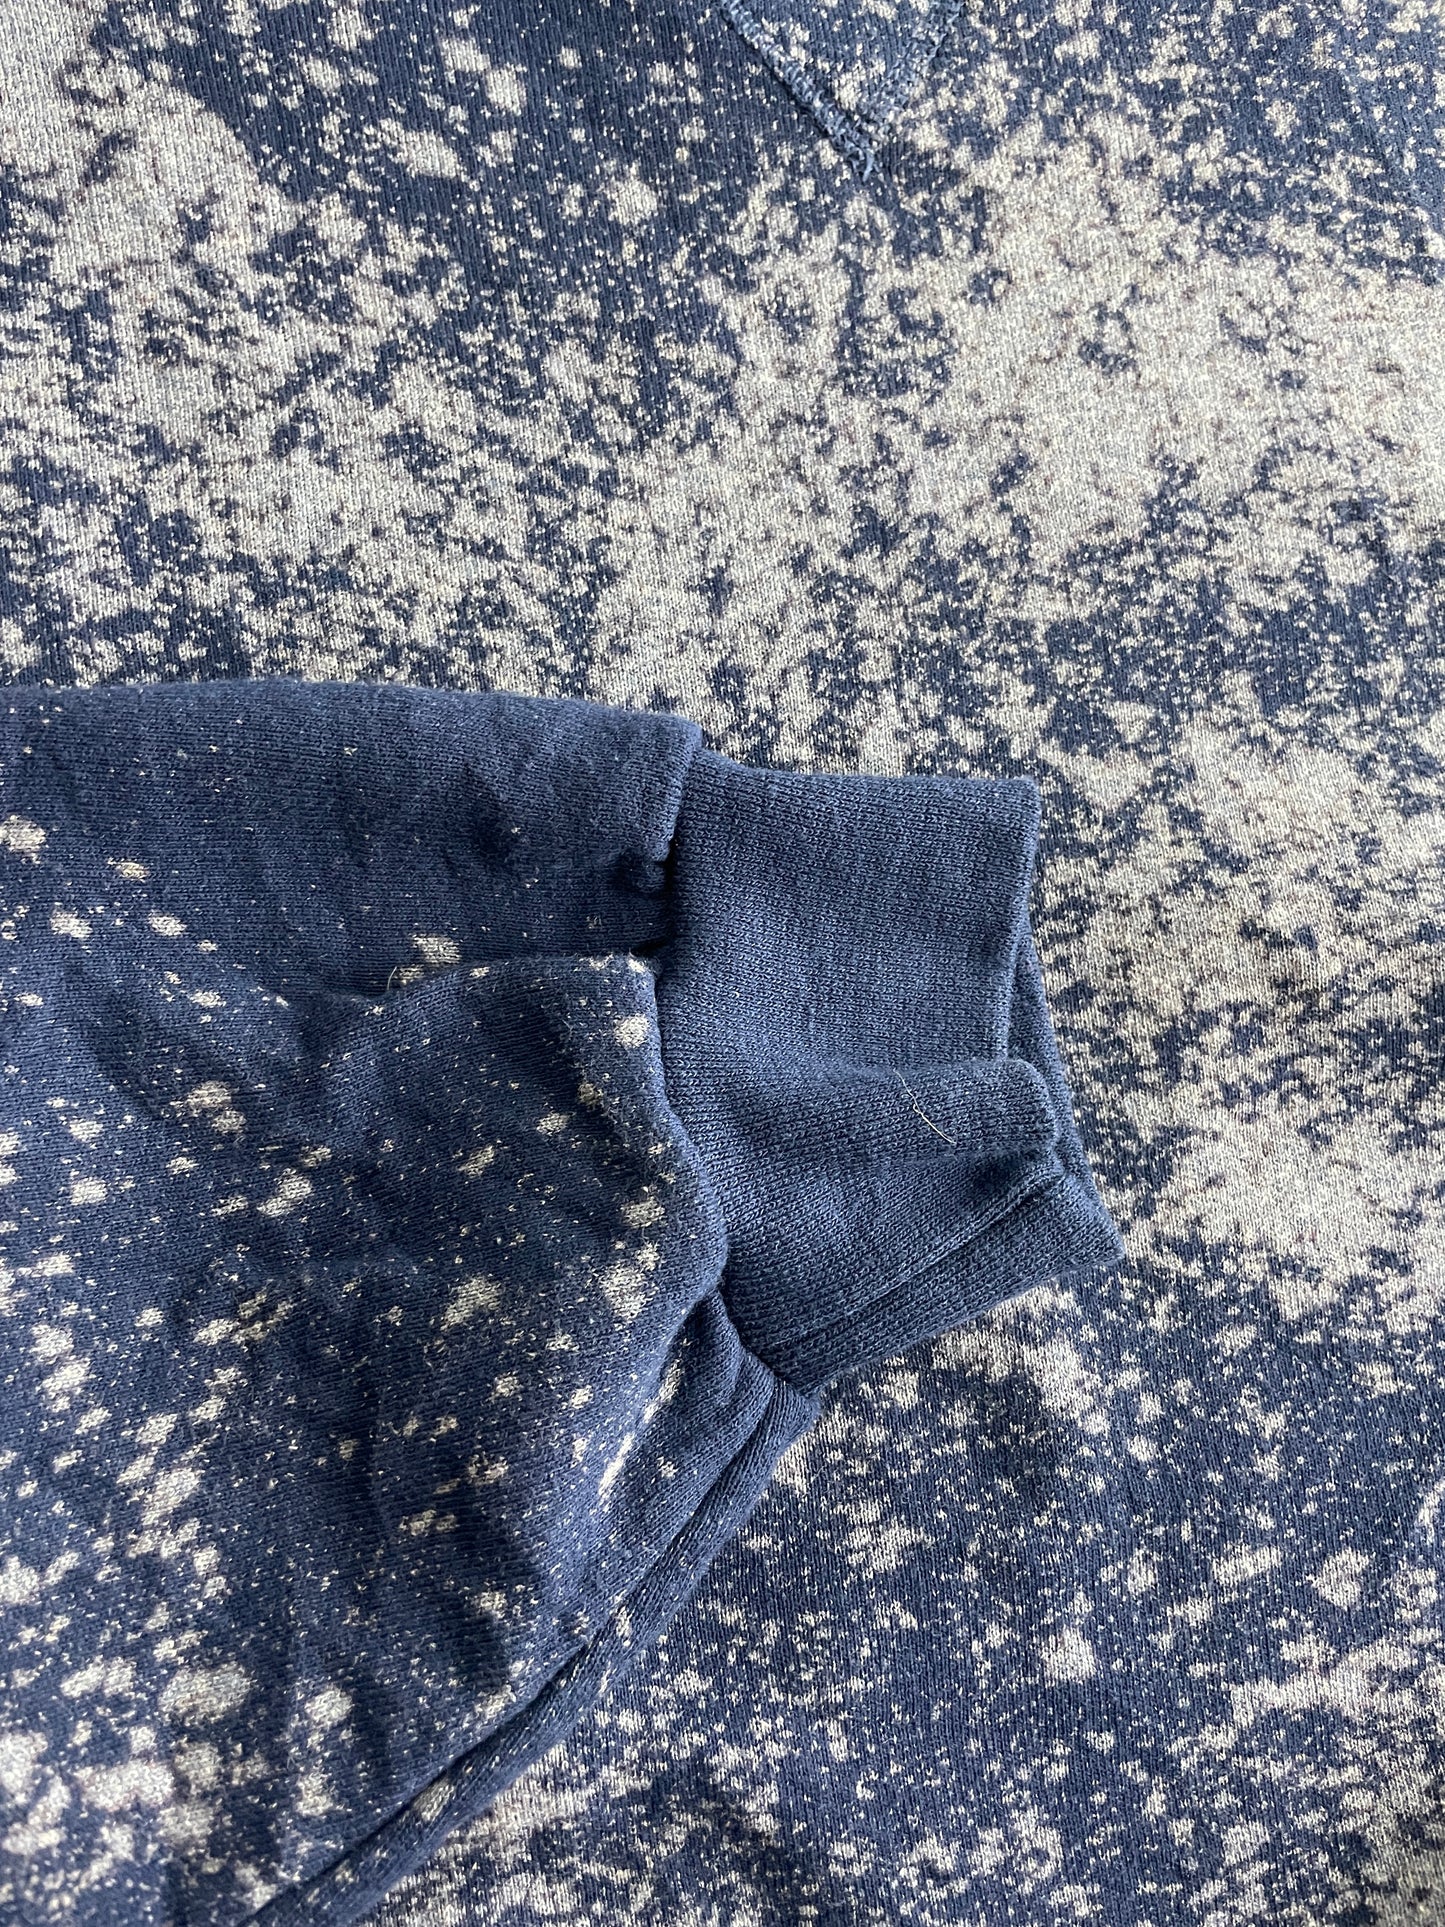 Bleached Russel Sweatshirt [L]